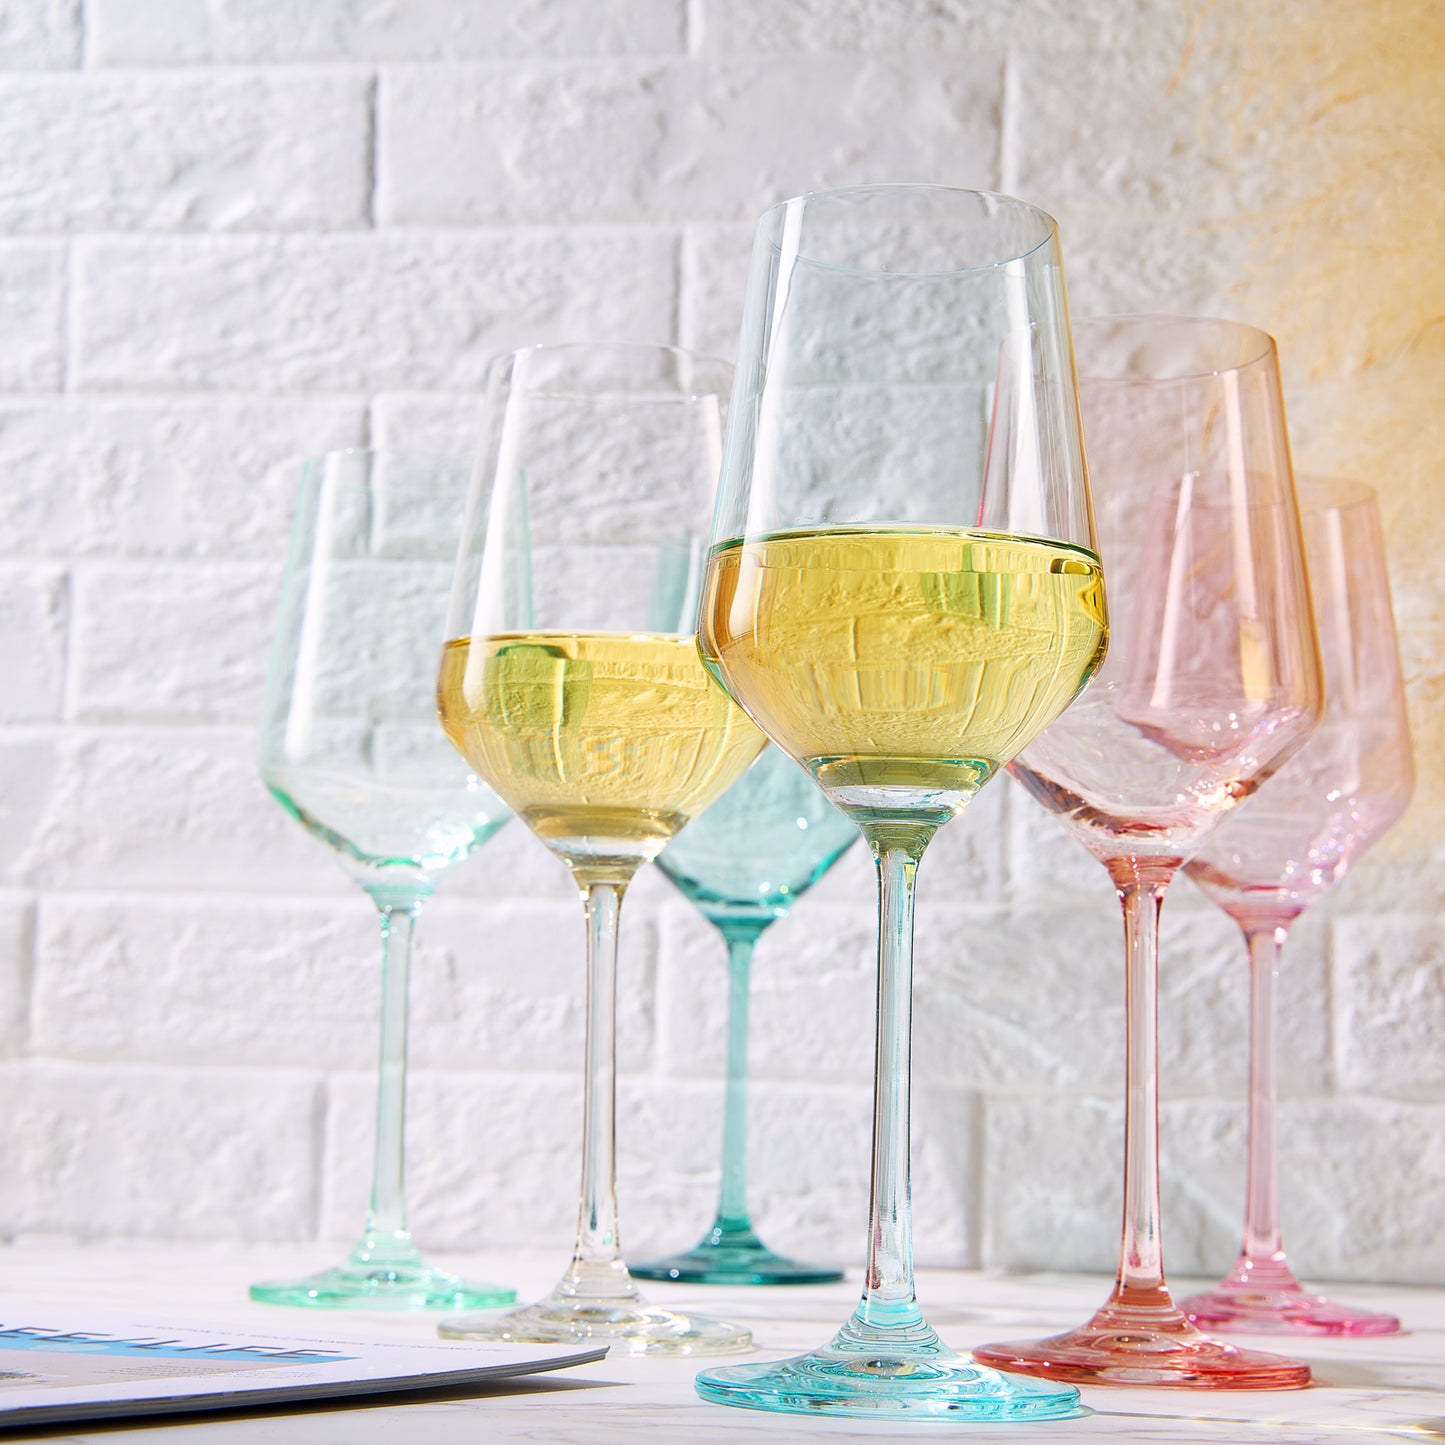 Colorata Wine Glassware, Set of 6